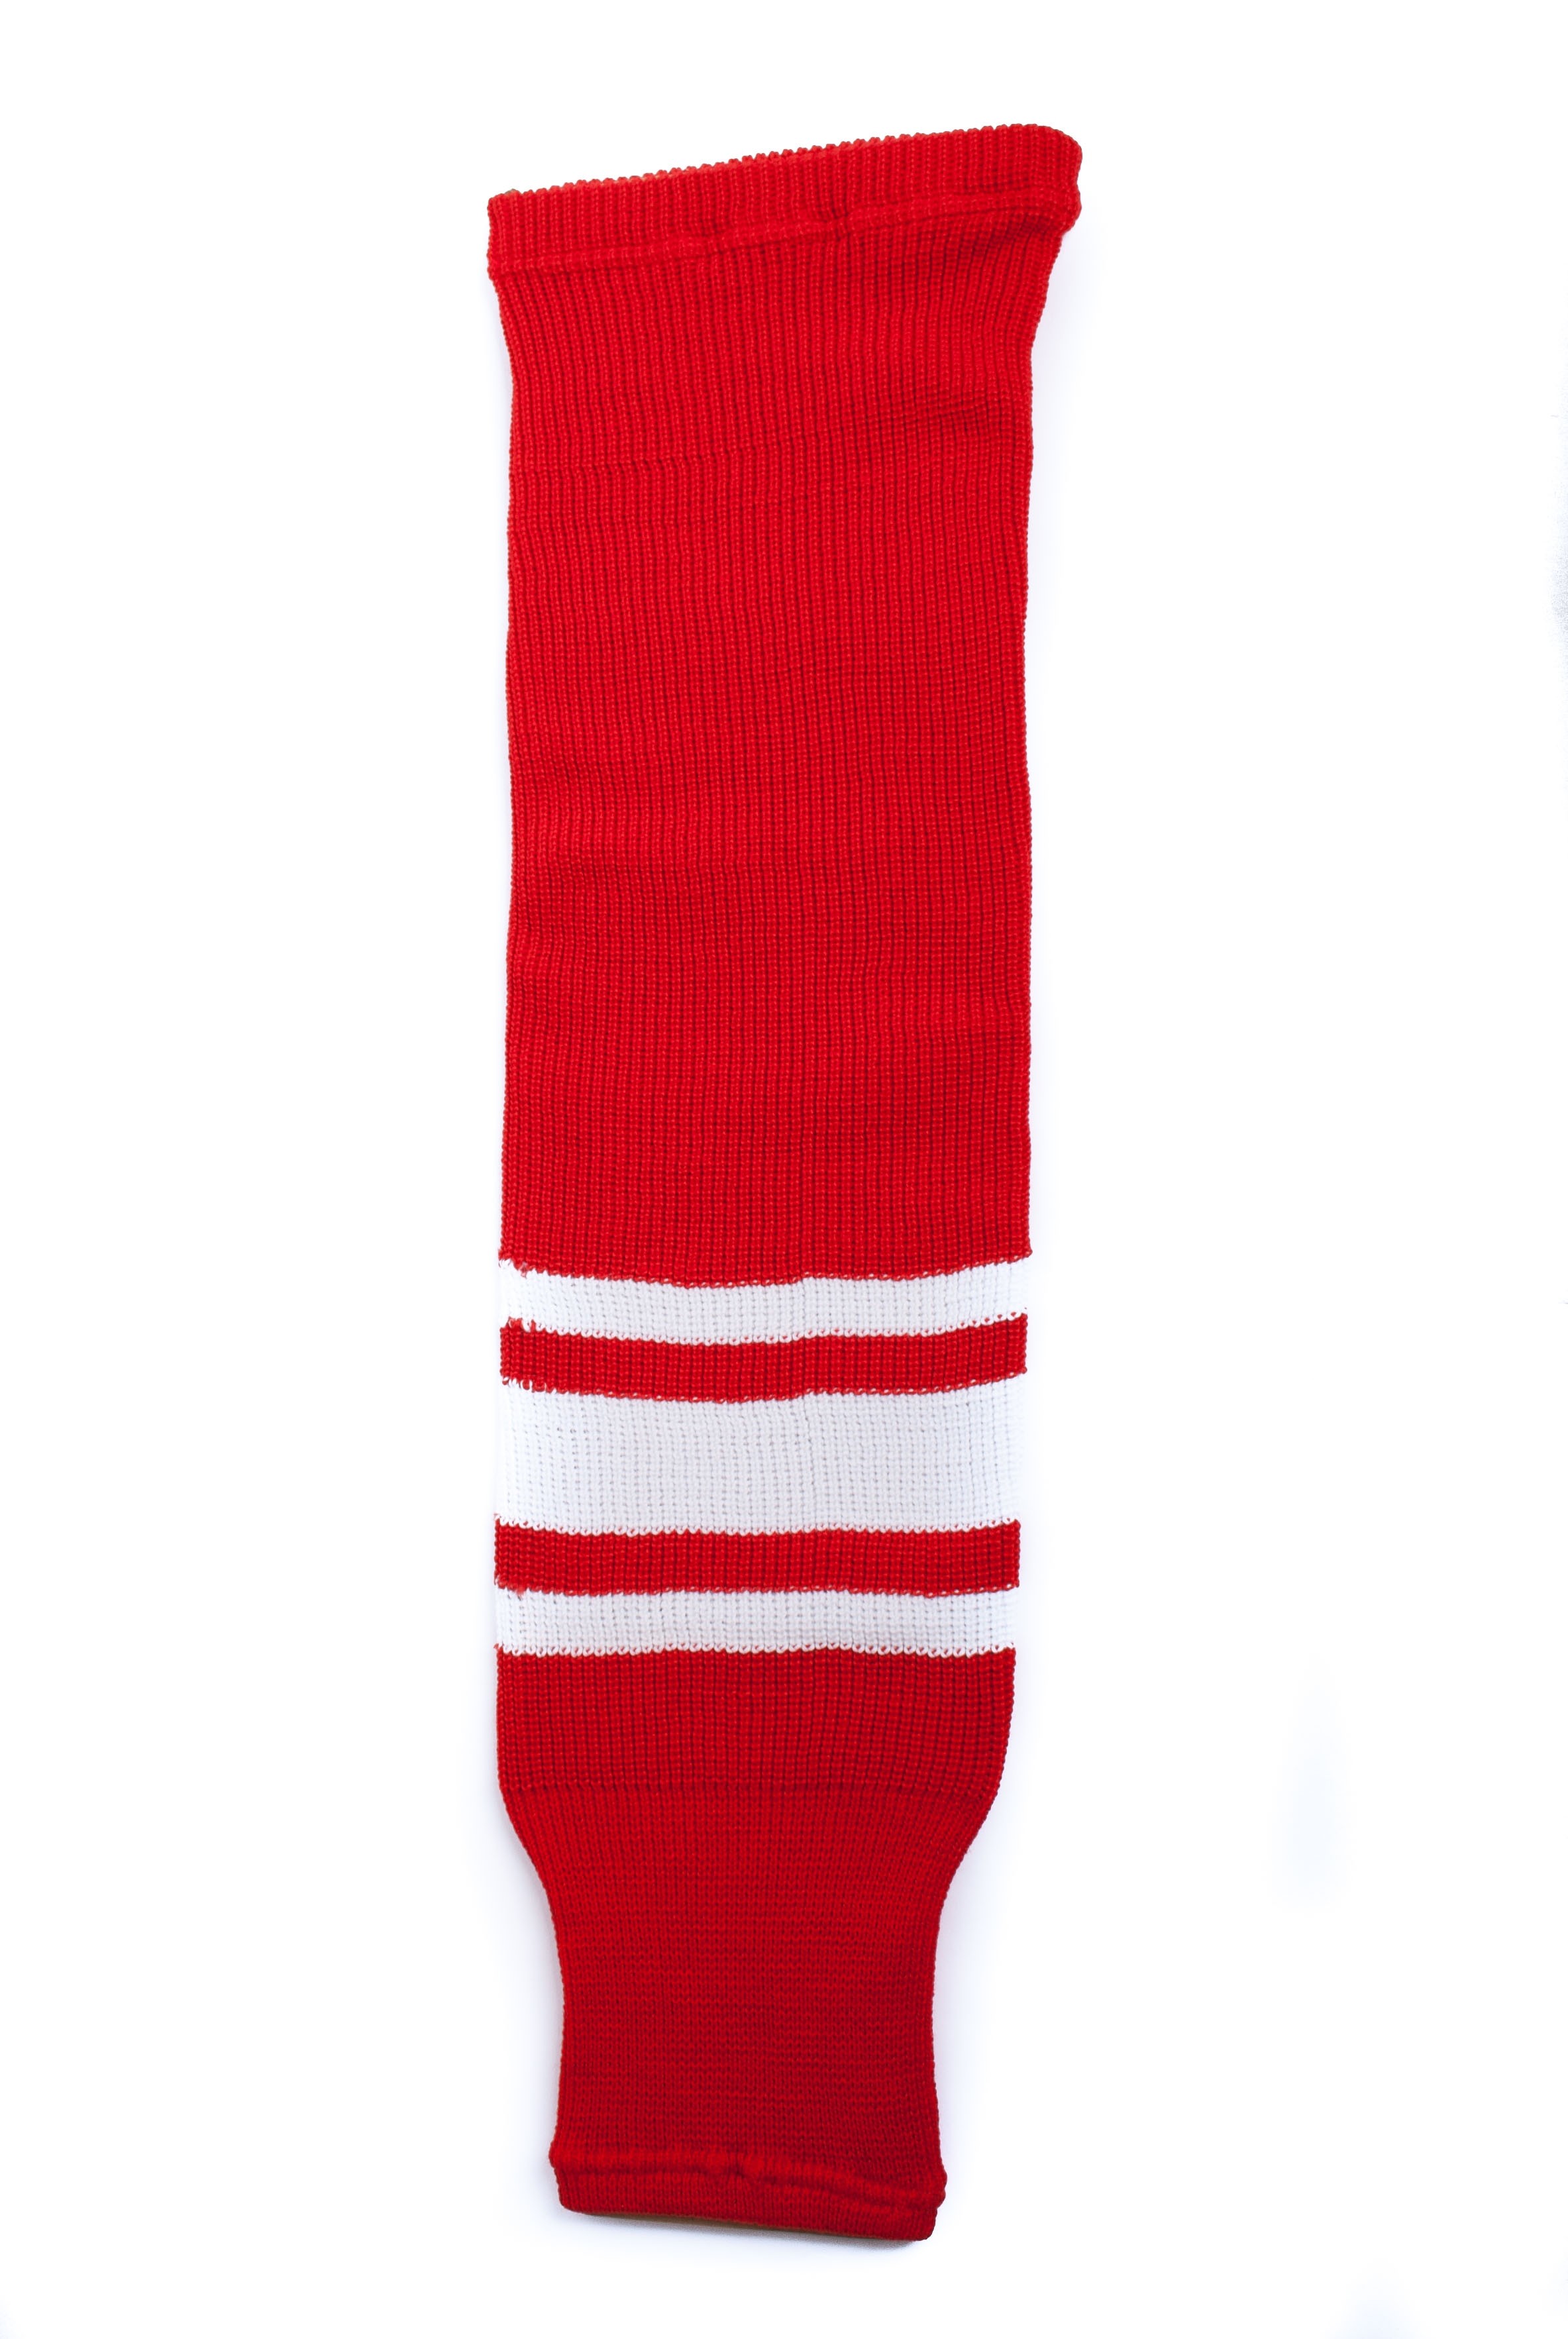 HOKEJAM Knit Adult Hockey Socks#007